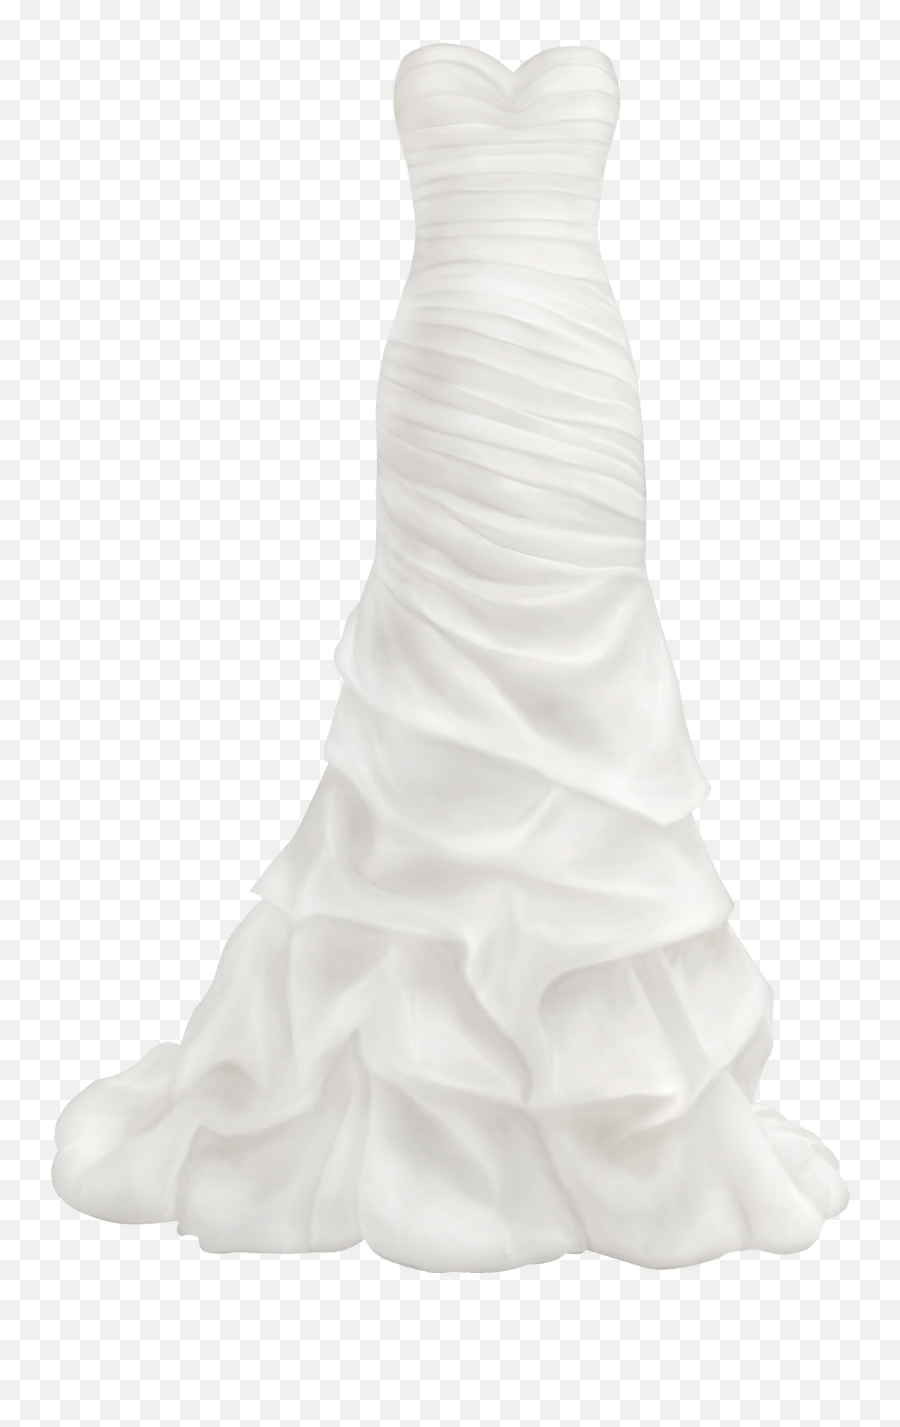 Emoji Clipart Dress Emoji Dress Transparent Free For - Transparent Wedding Dress Png,Find The Emoji Wedding